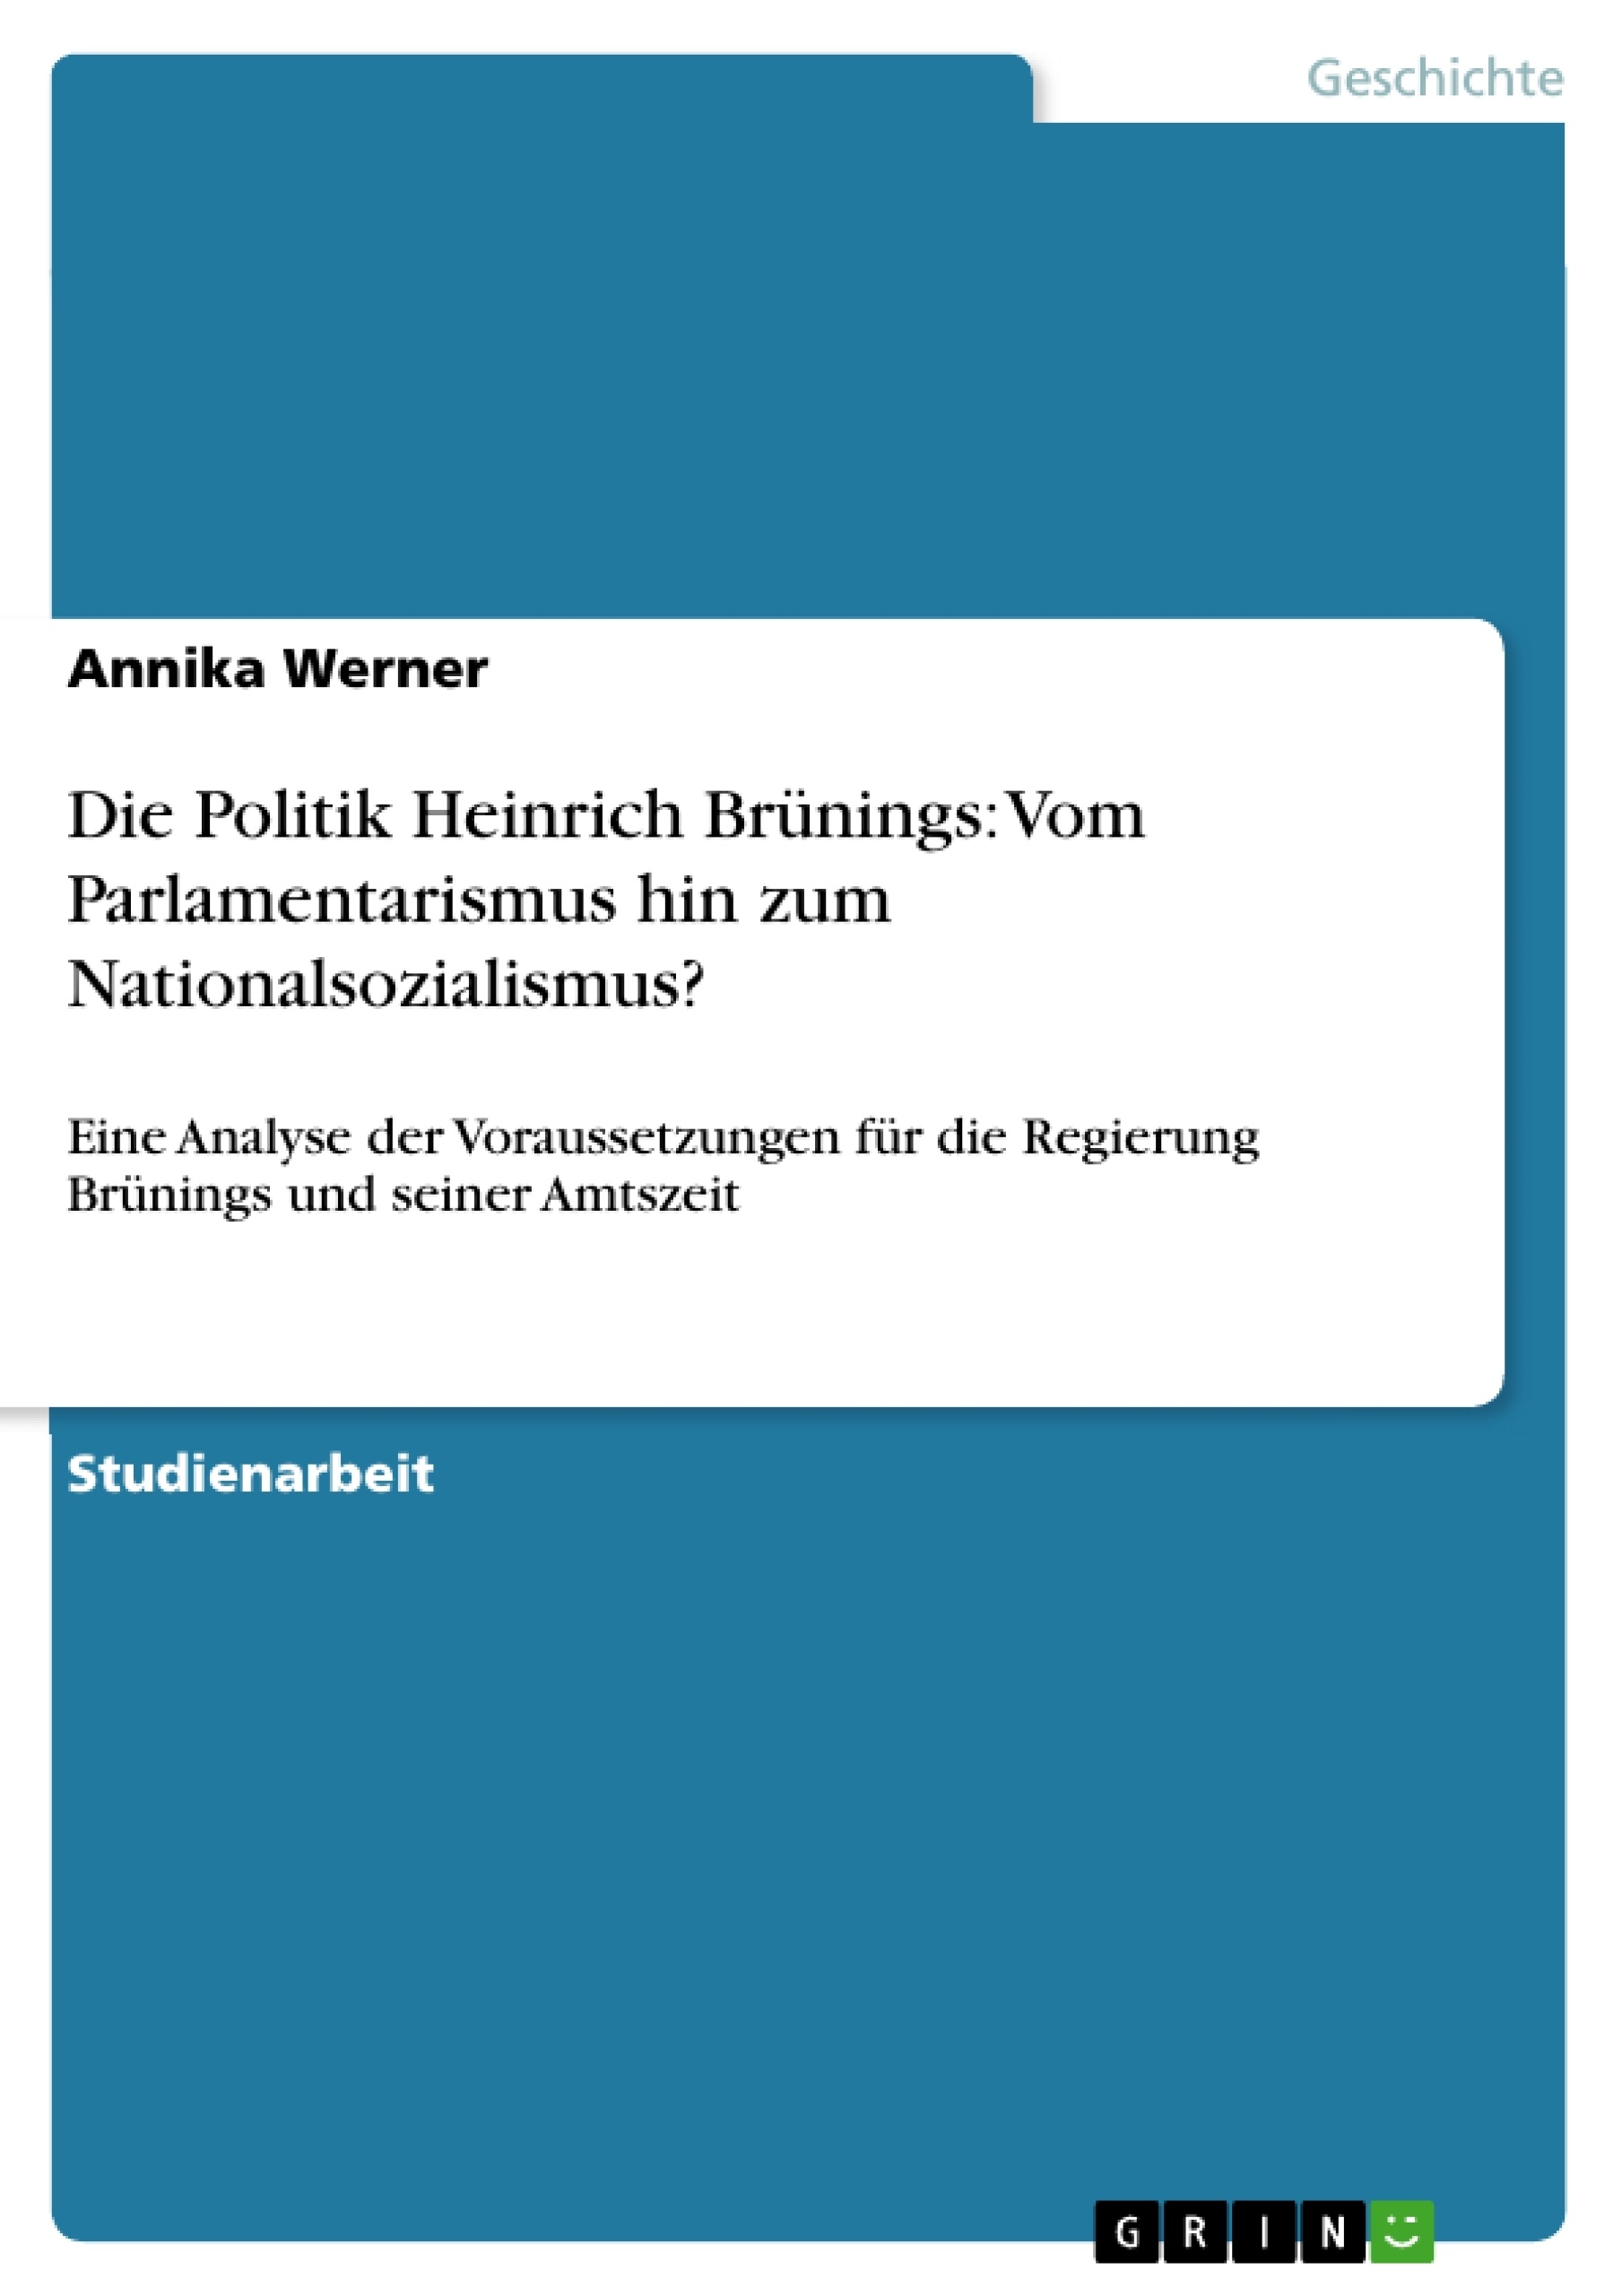 Title: Die Politik Heinrich Brünings: Vom Parlamentarismus hin zum Nationalsozialismus?